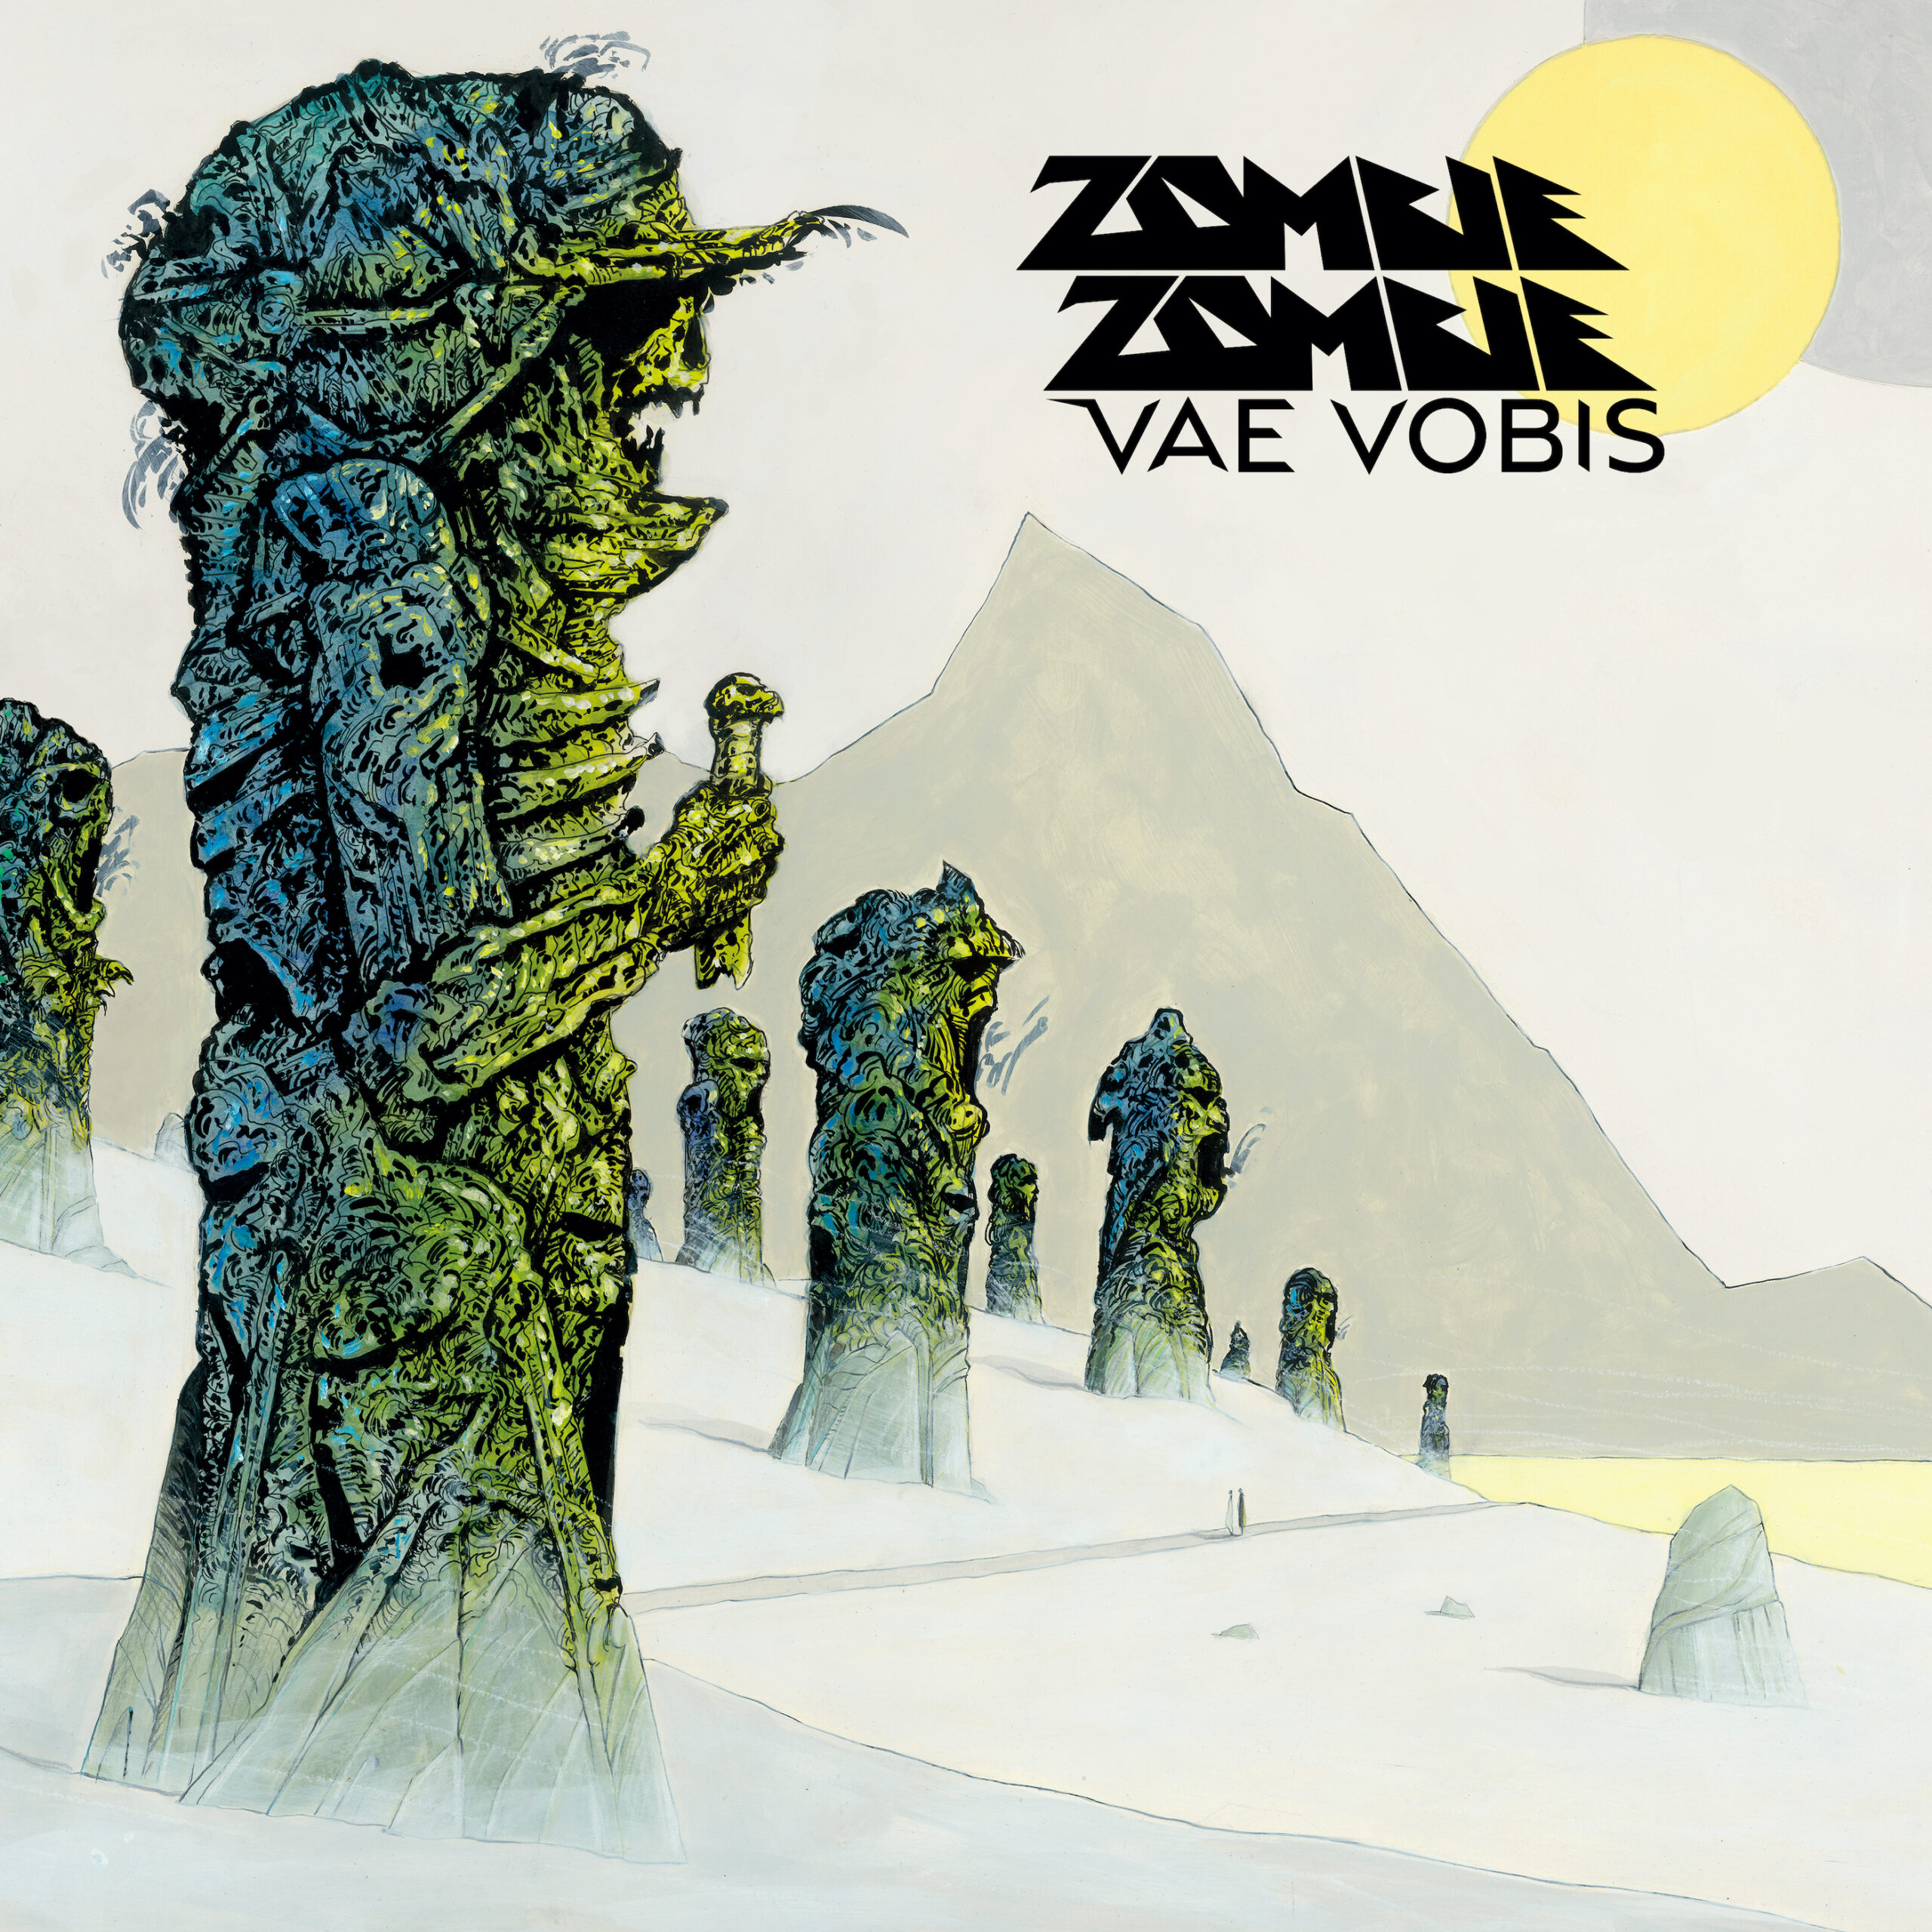 ZOMBIE ZOMBIE "VAE VOBIS" | Born Bad Records